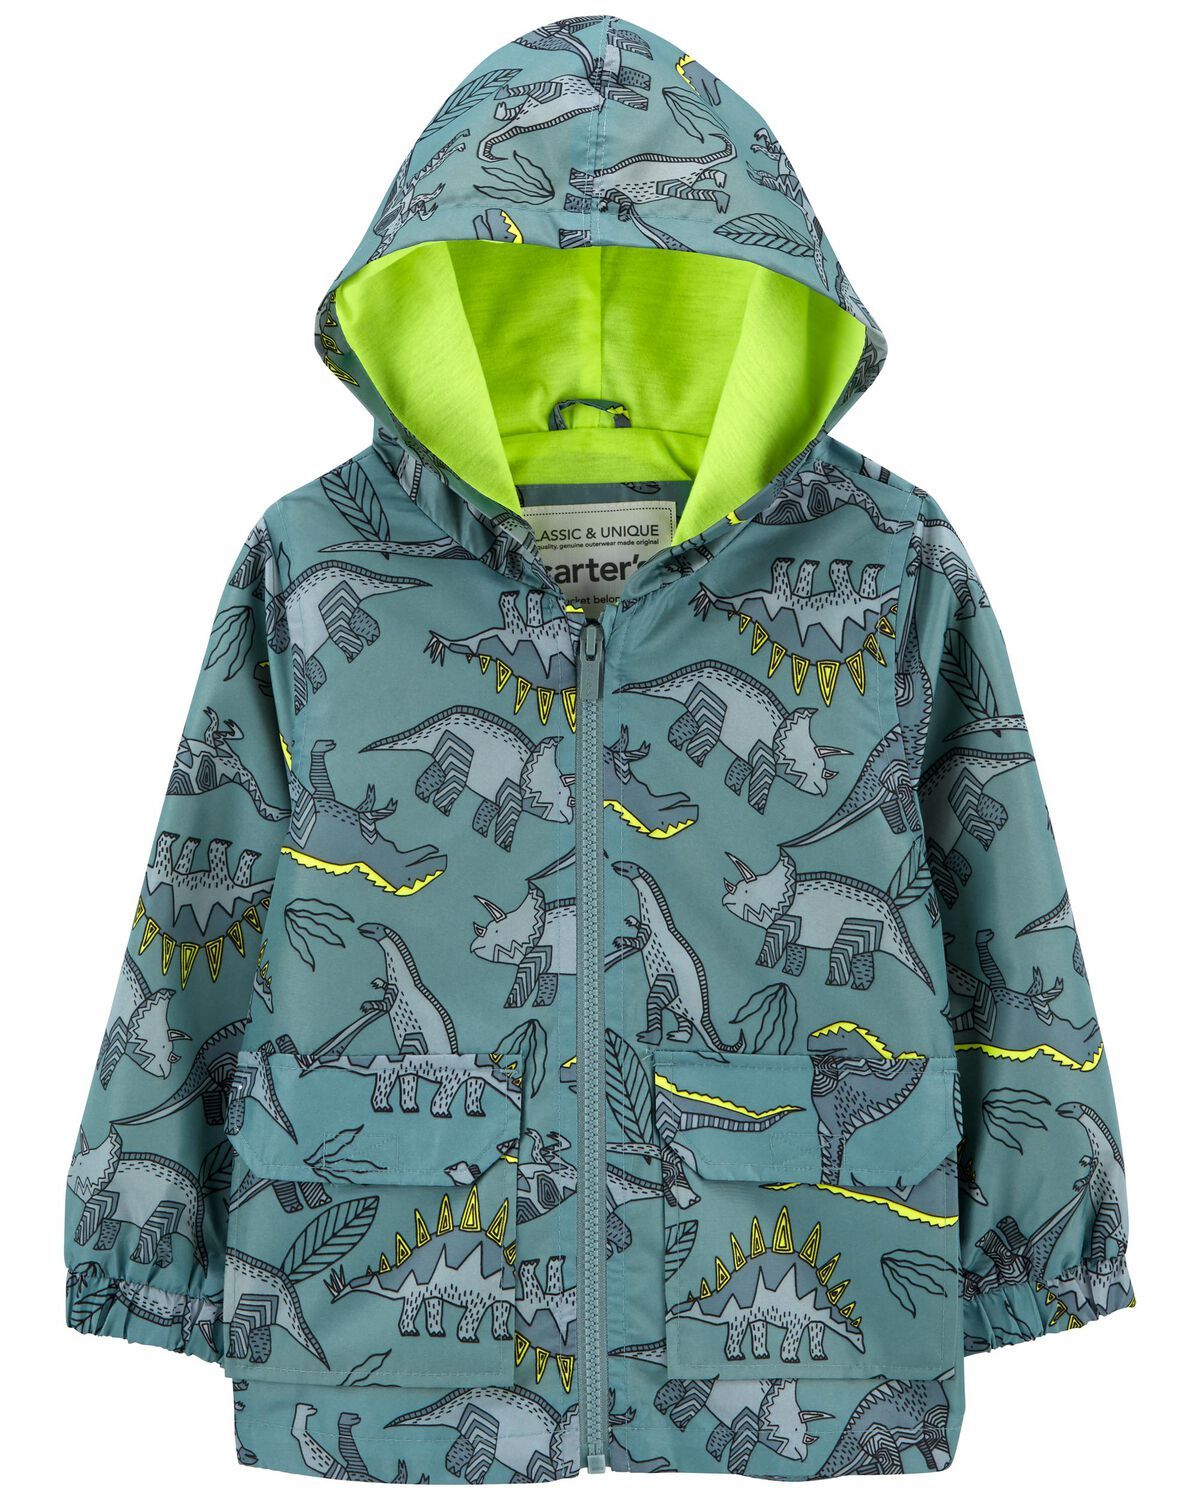 Green Toddler Dinosaur Rain Jacket | carters.com | Carter's